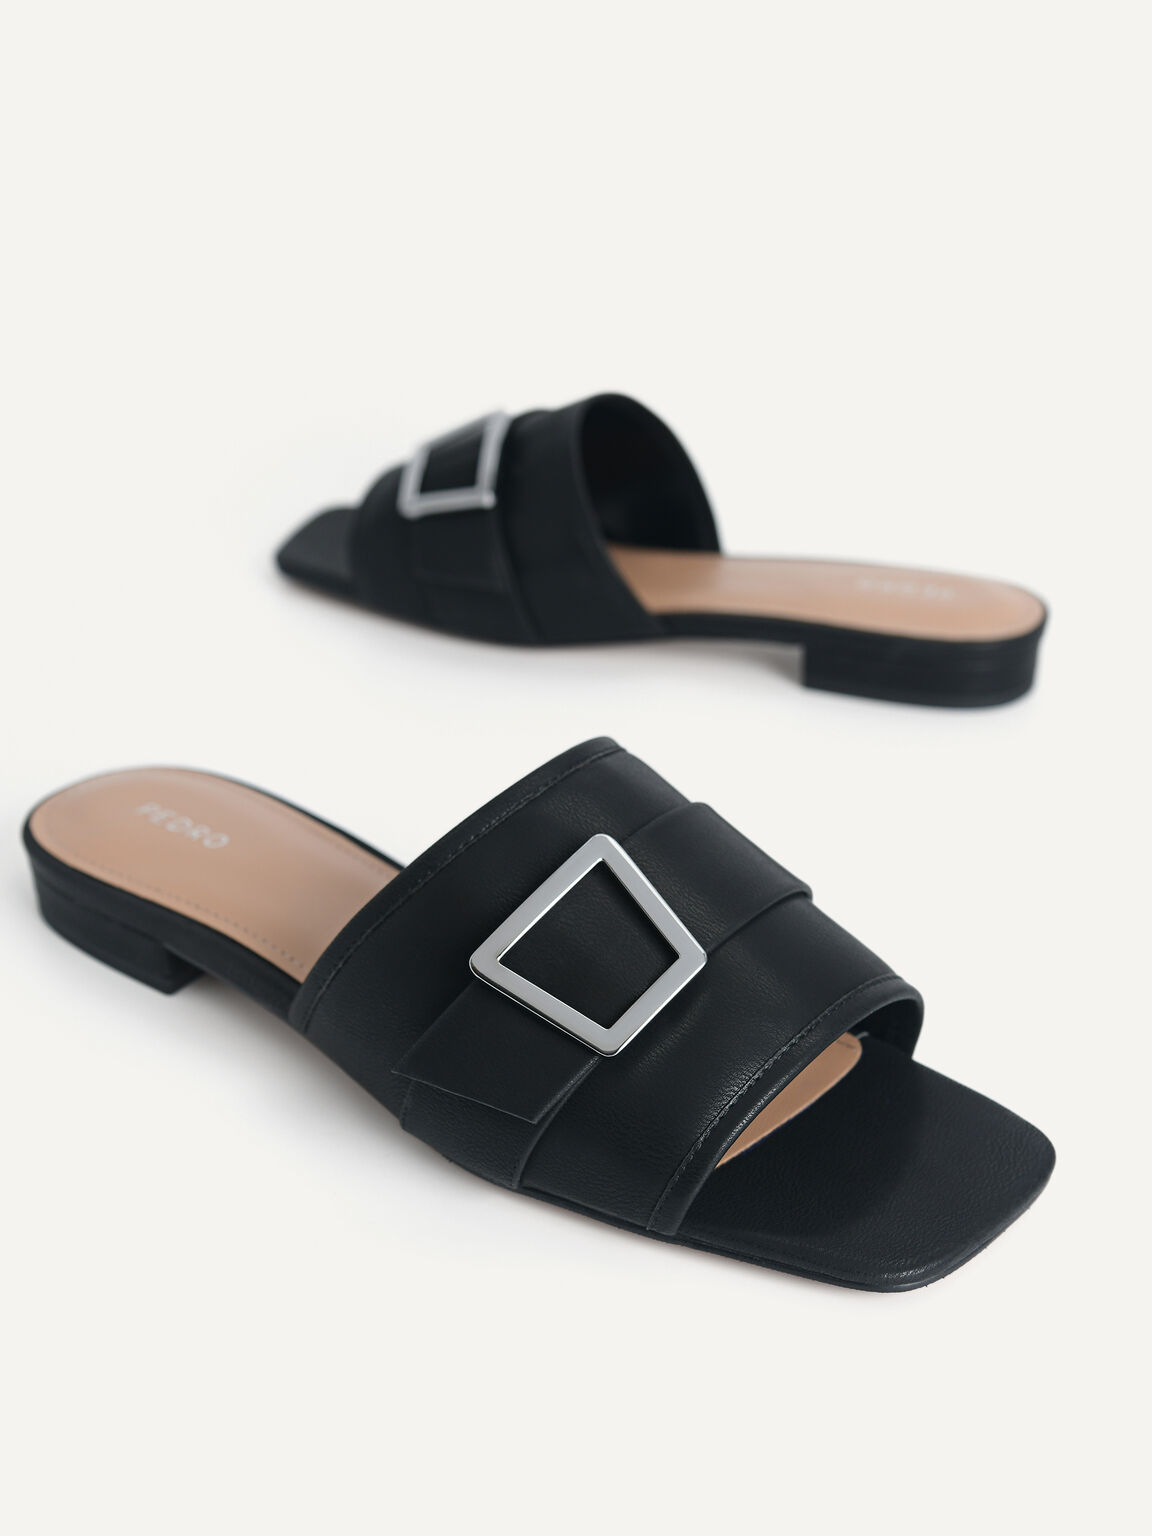 Buckle Slide Sandals, Black